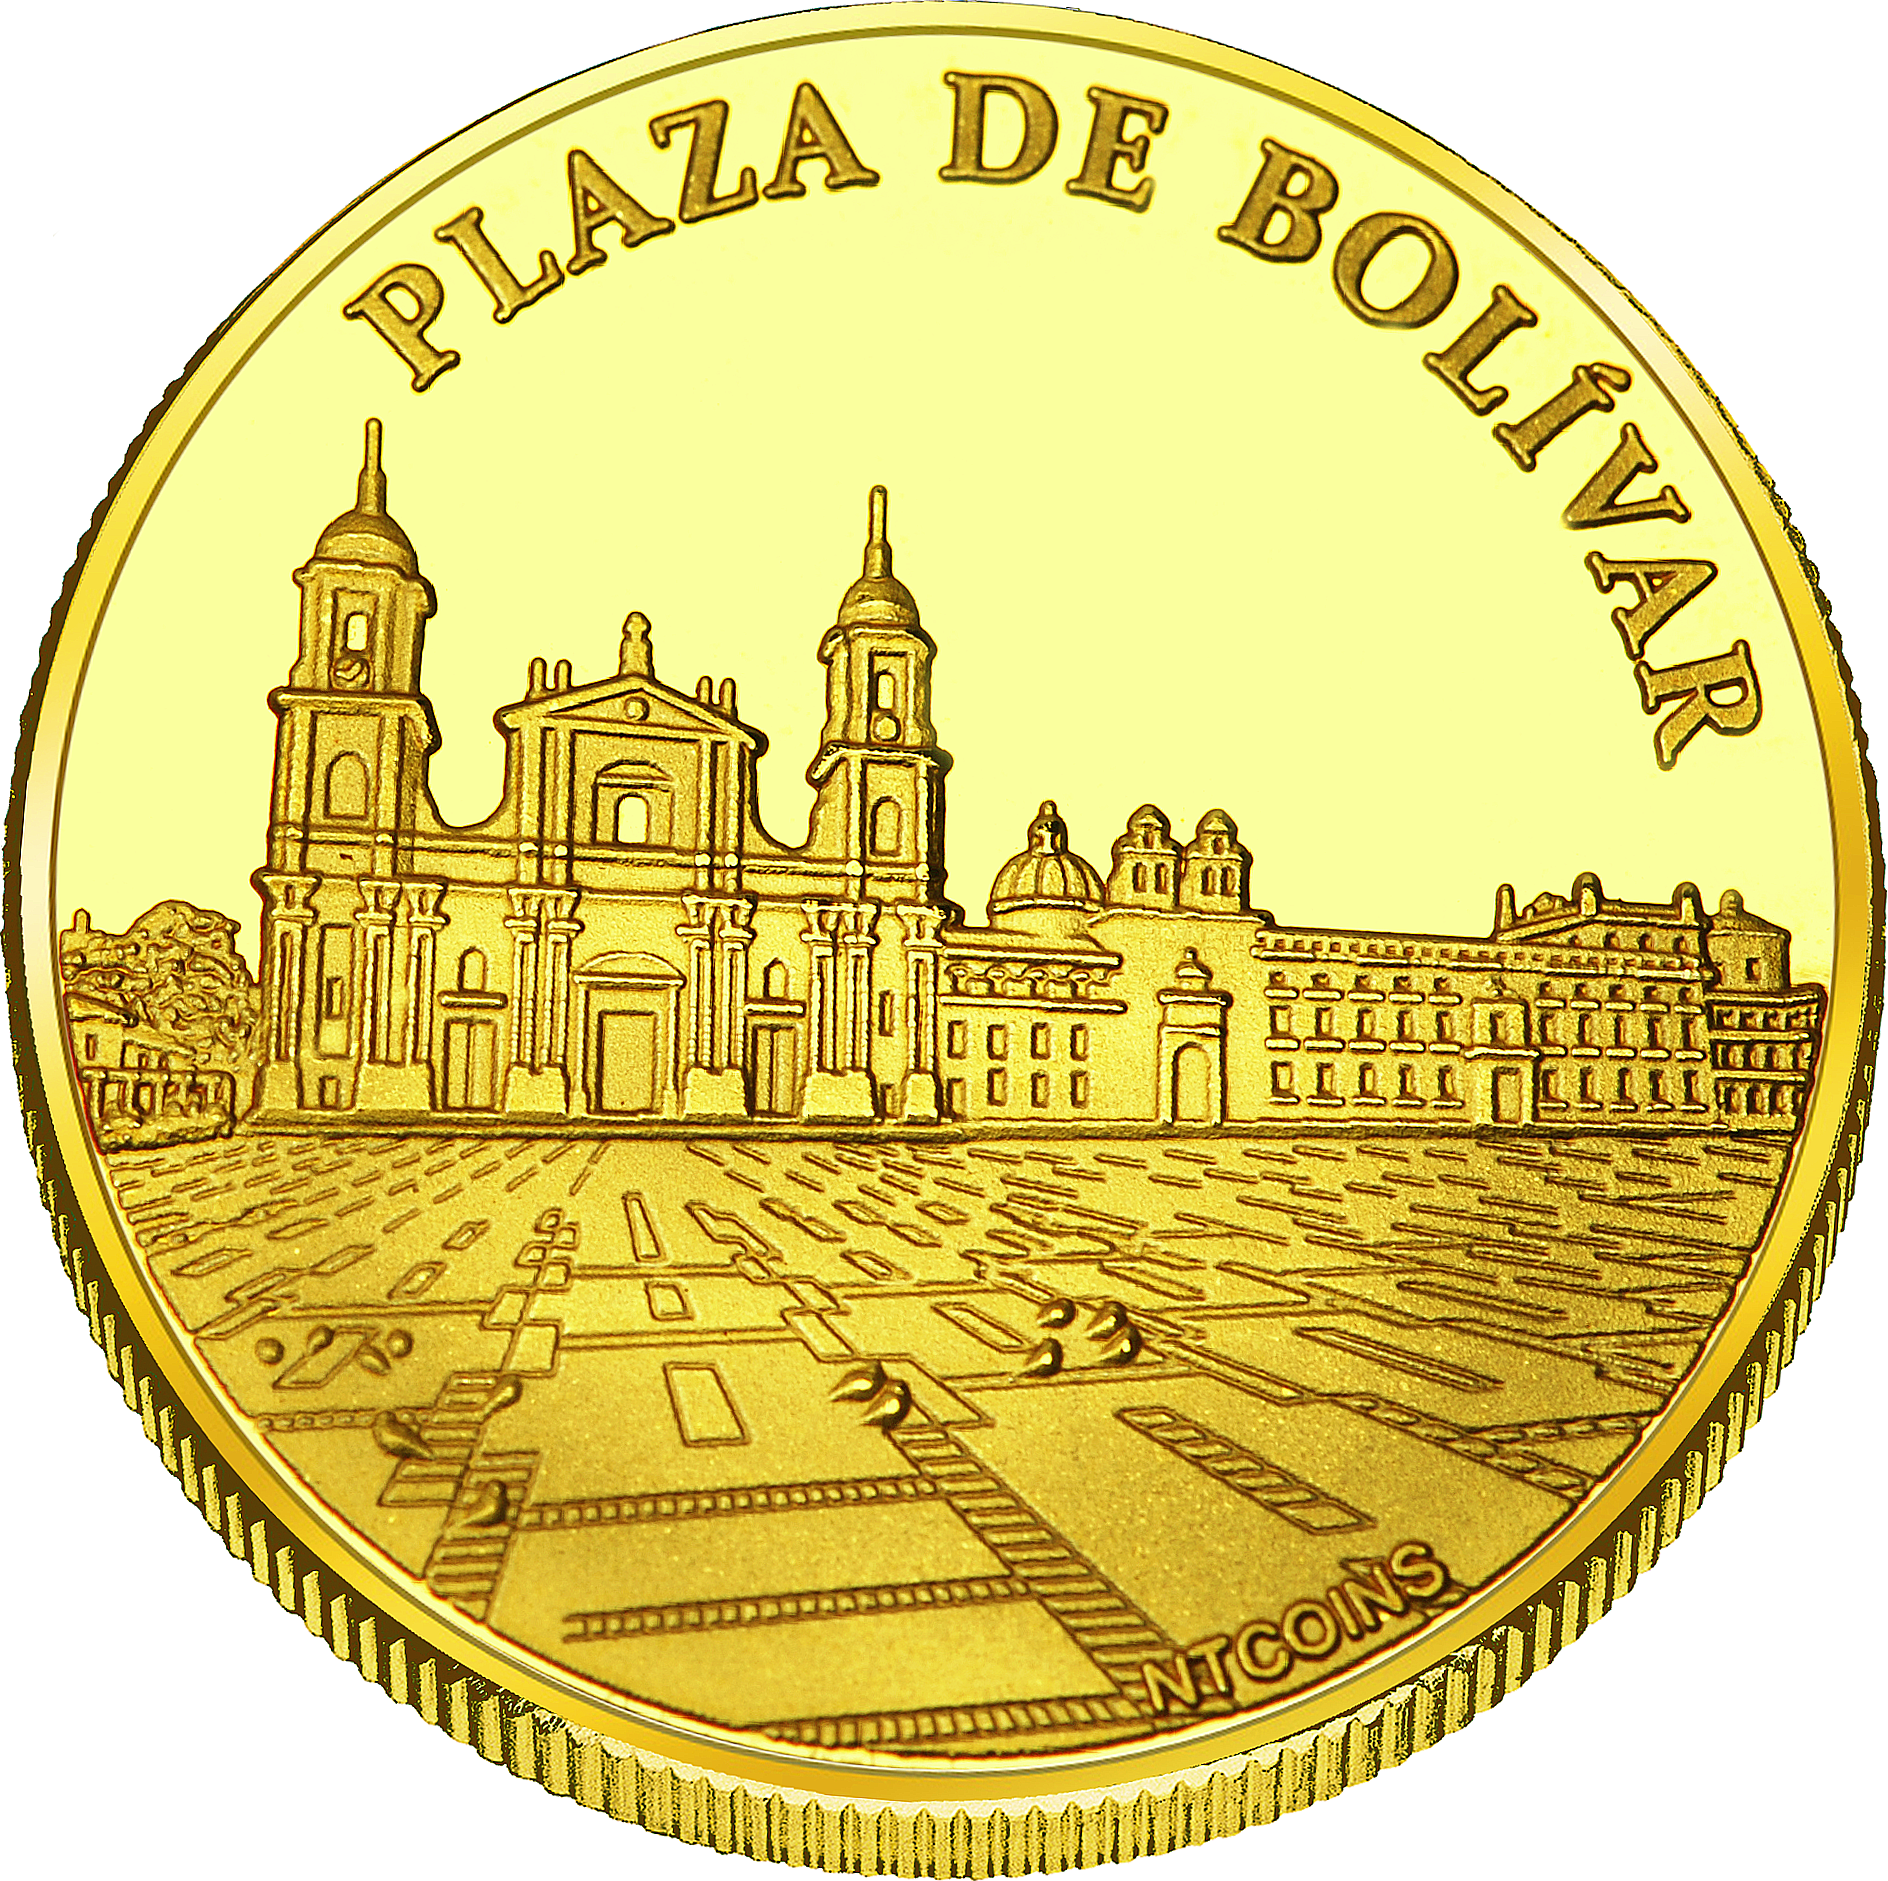 Front side Monserrate Plaza de Bolívar Golden Columbia